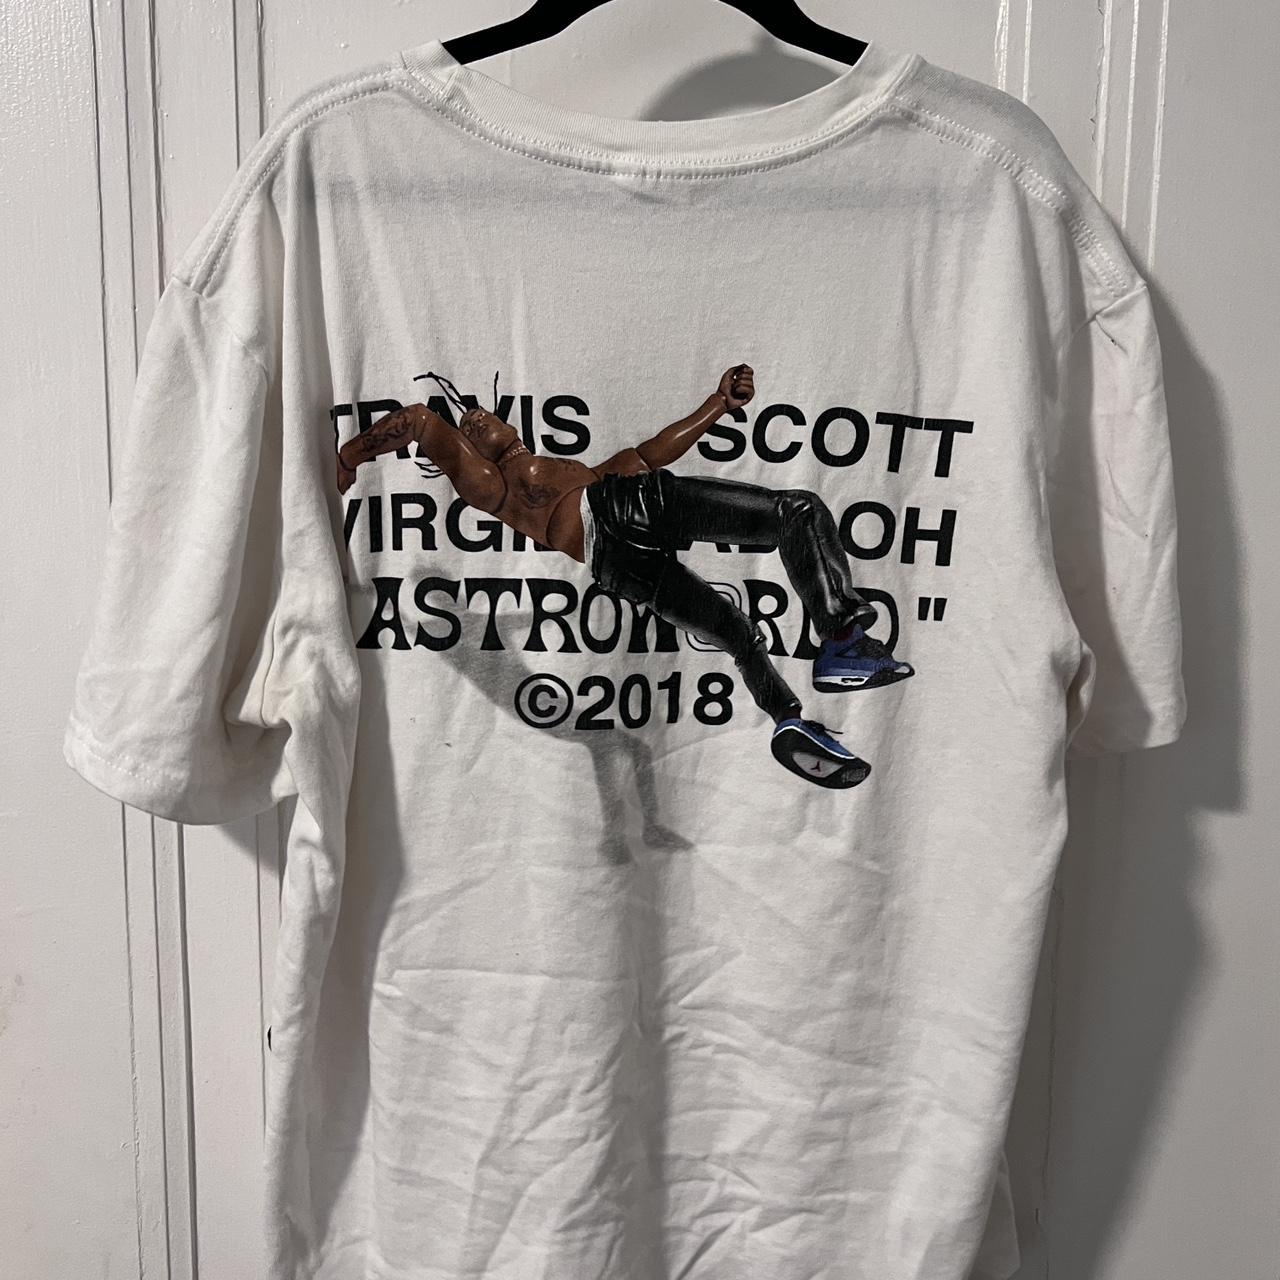 Travis Scott Men's White and Blue T-shirt